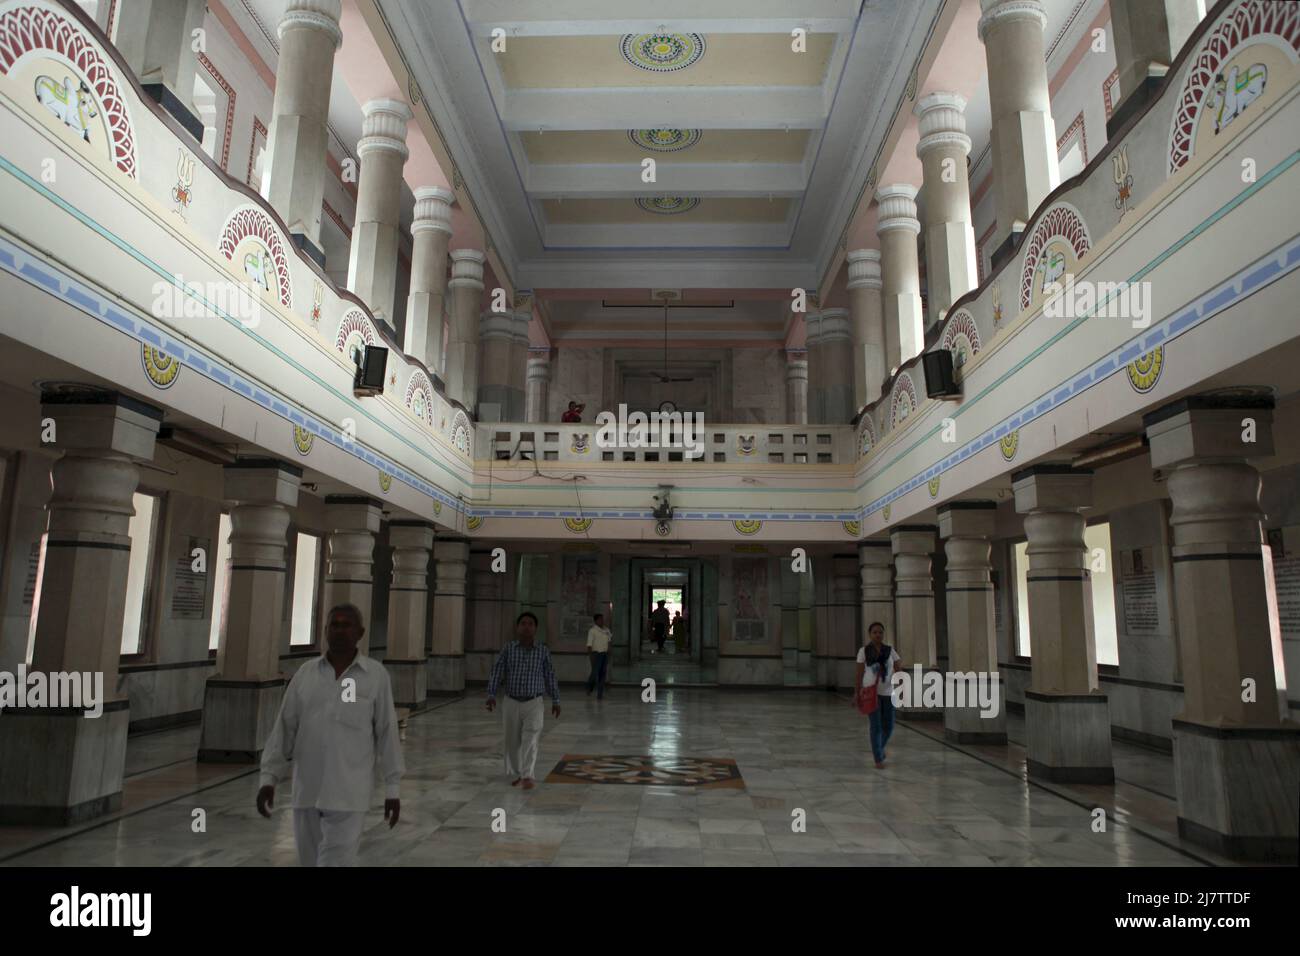 El salón central del templo de Viswanath en el complejo de la Universidad Hindú de Banaras en Varanasi, Uttar Pradesh, India. Foto de stock